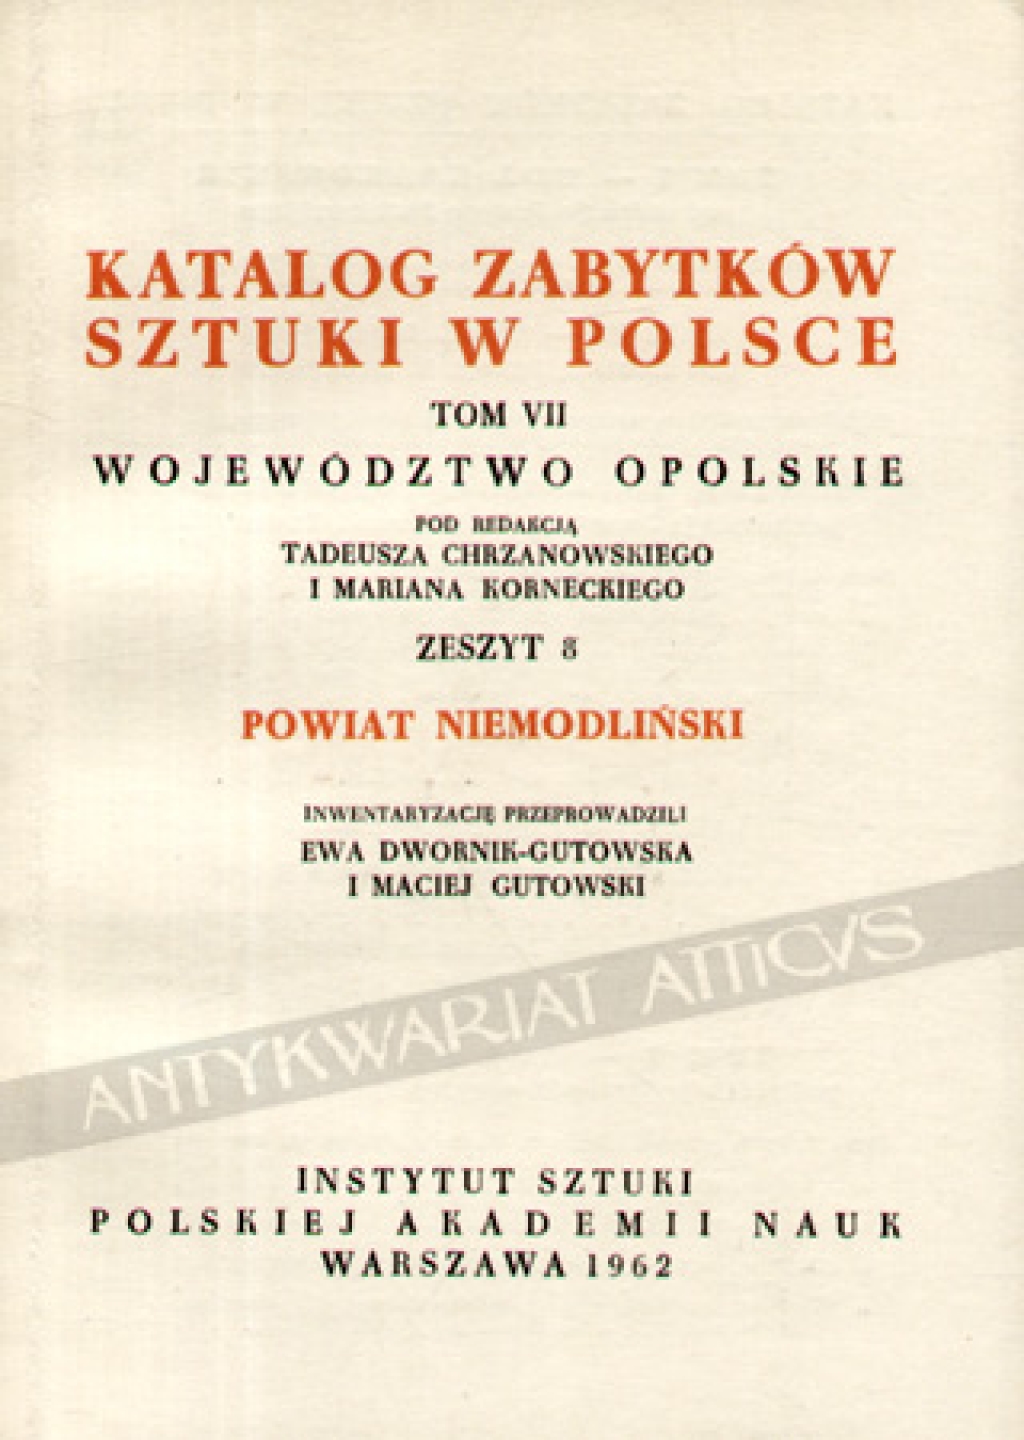 Katalog zabytków sztuki w Polsce, t. VII: województwo opolskie, zeszyt 8, powiat niemodliński